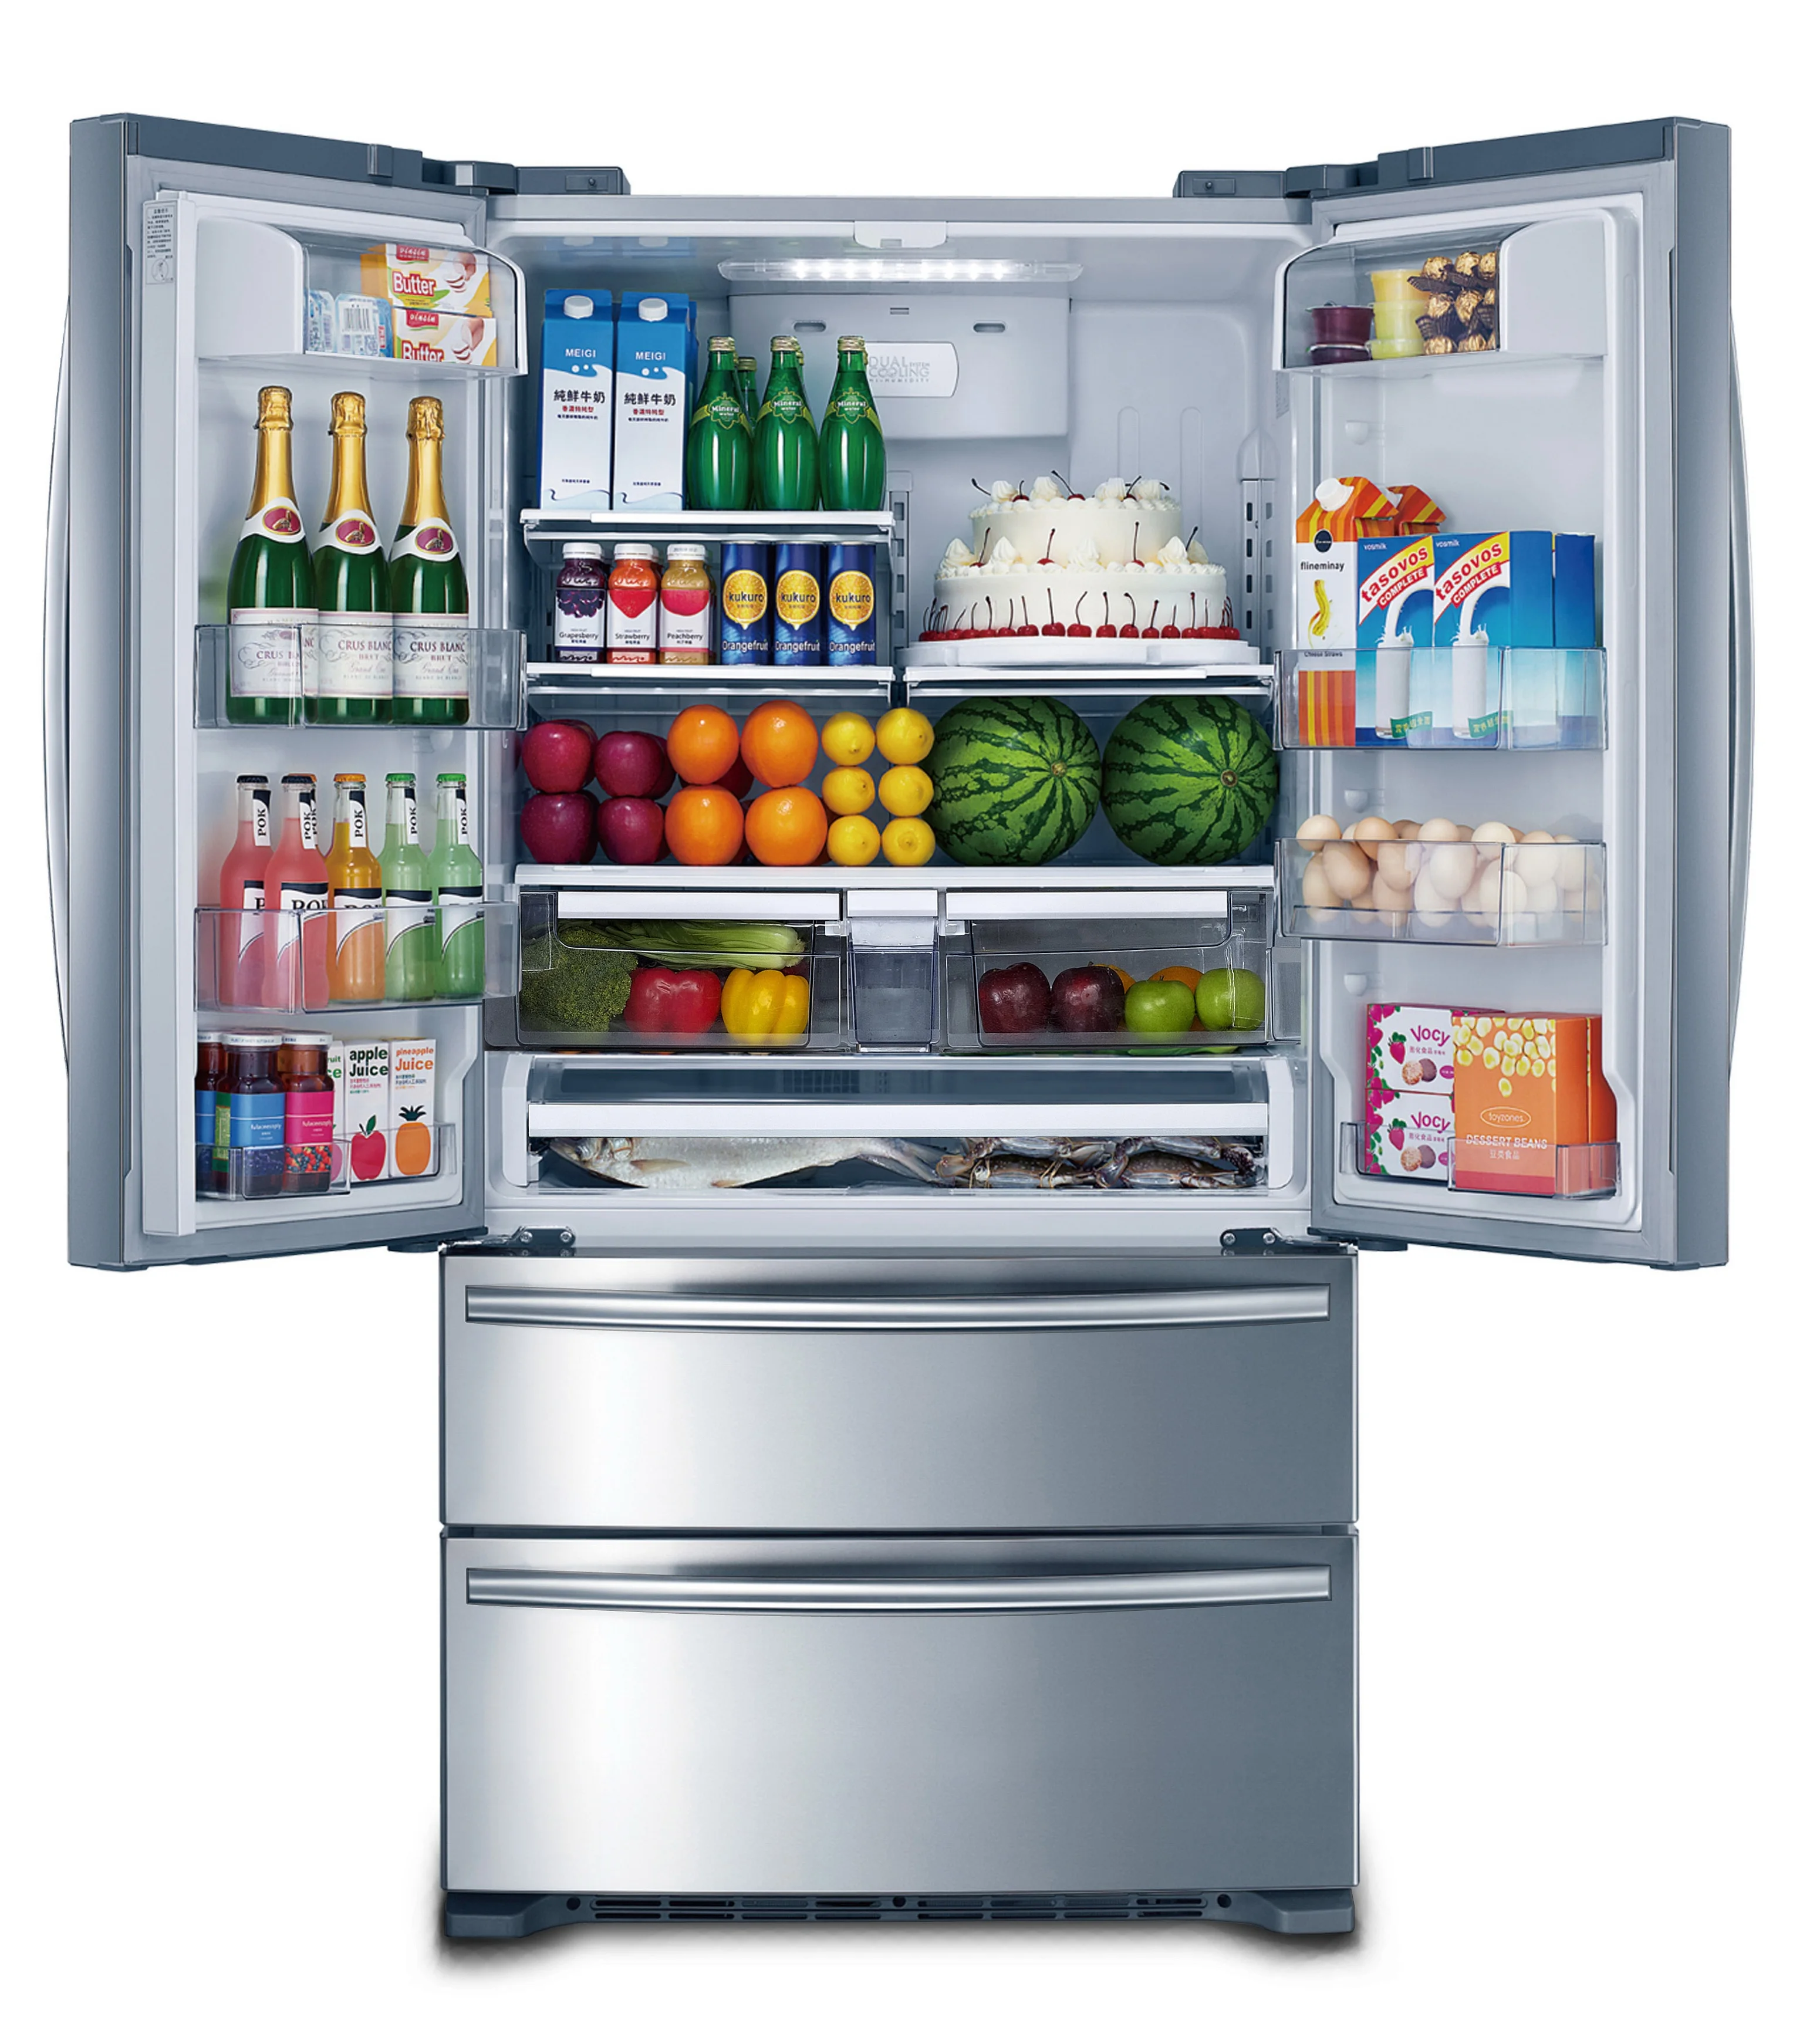 Холодильник купить в набережных. Холодильник Freezer Refrigerator. Холодильник трехкамерный Hyundai cm4045fix total no Frost, French Door, нержавеющая сталь. Холодильник Hi hcd020601w. Система ноу Фрост в холодильнике.